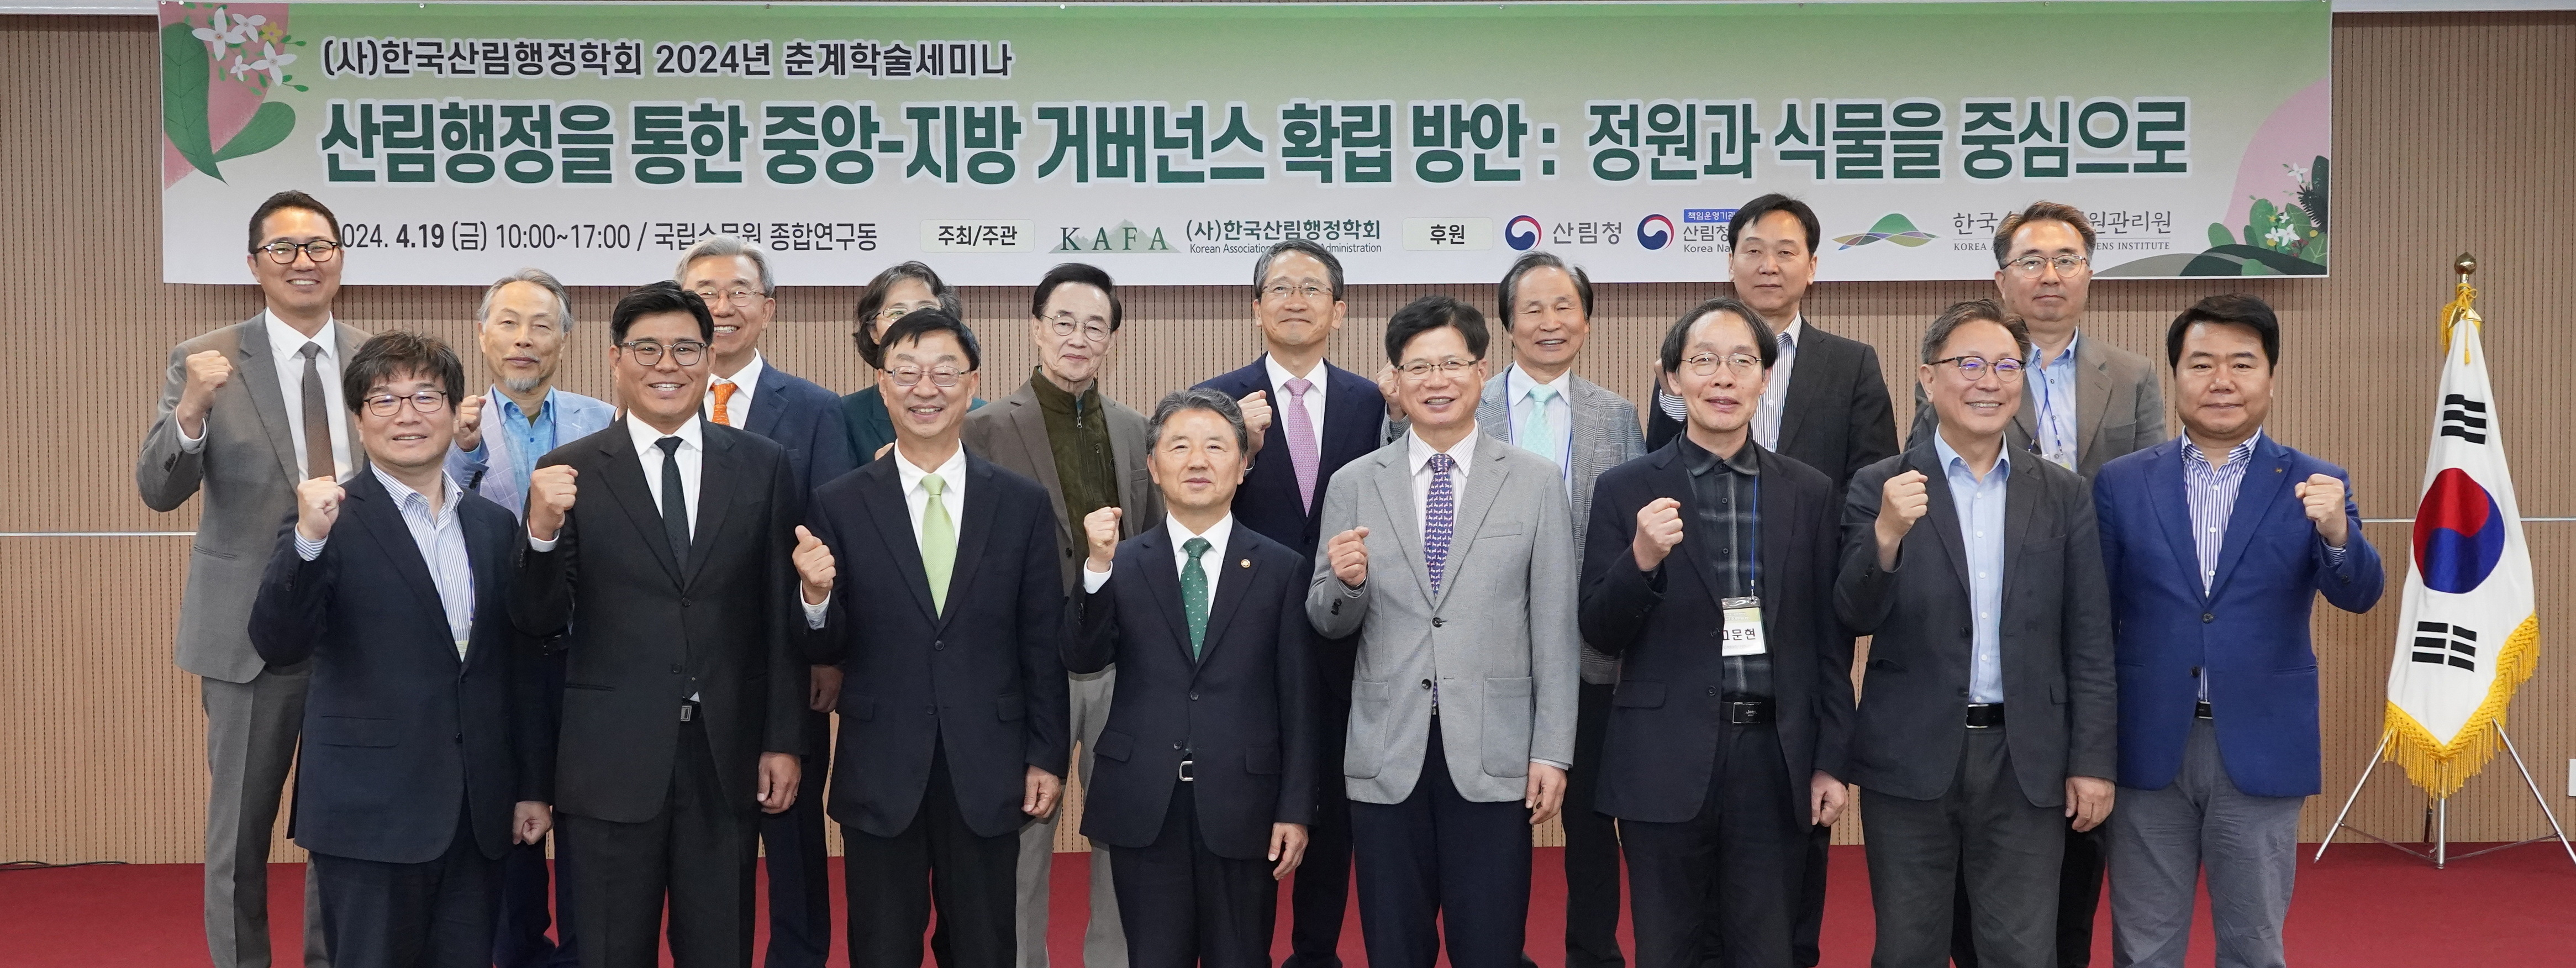 남성현 산림청장, 한국산림행정학회 춘계 학술세미나 참석 